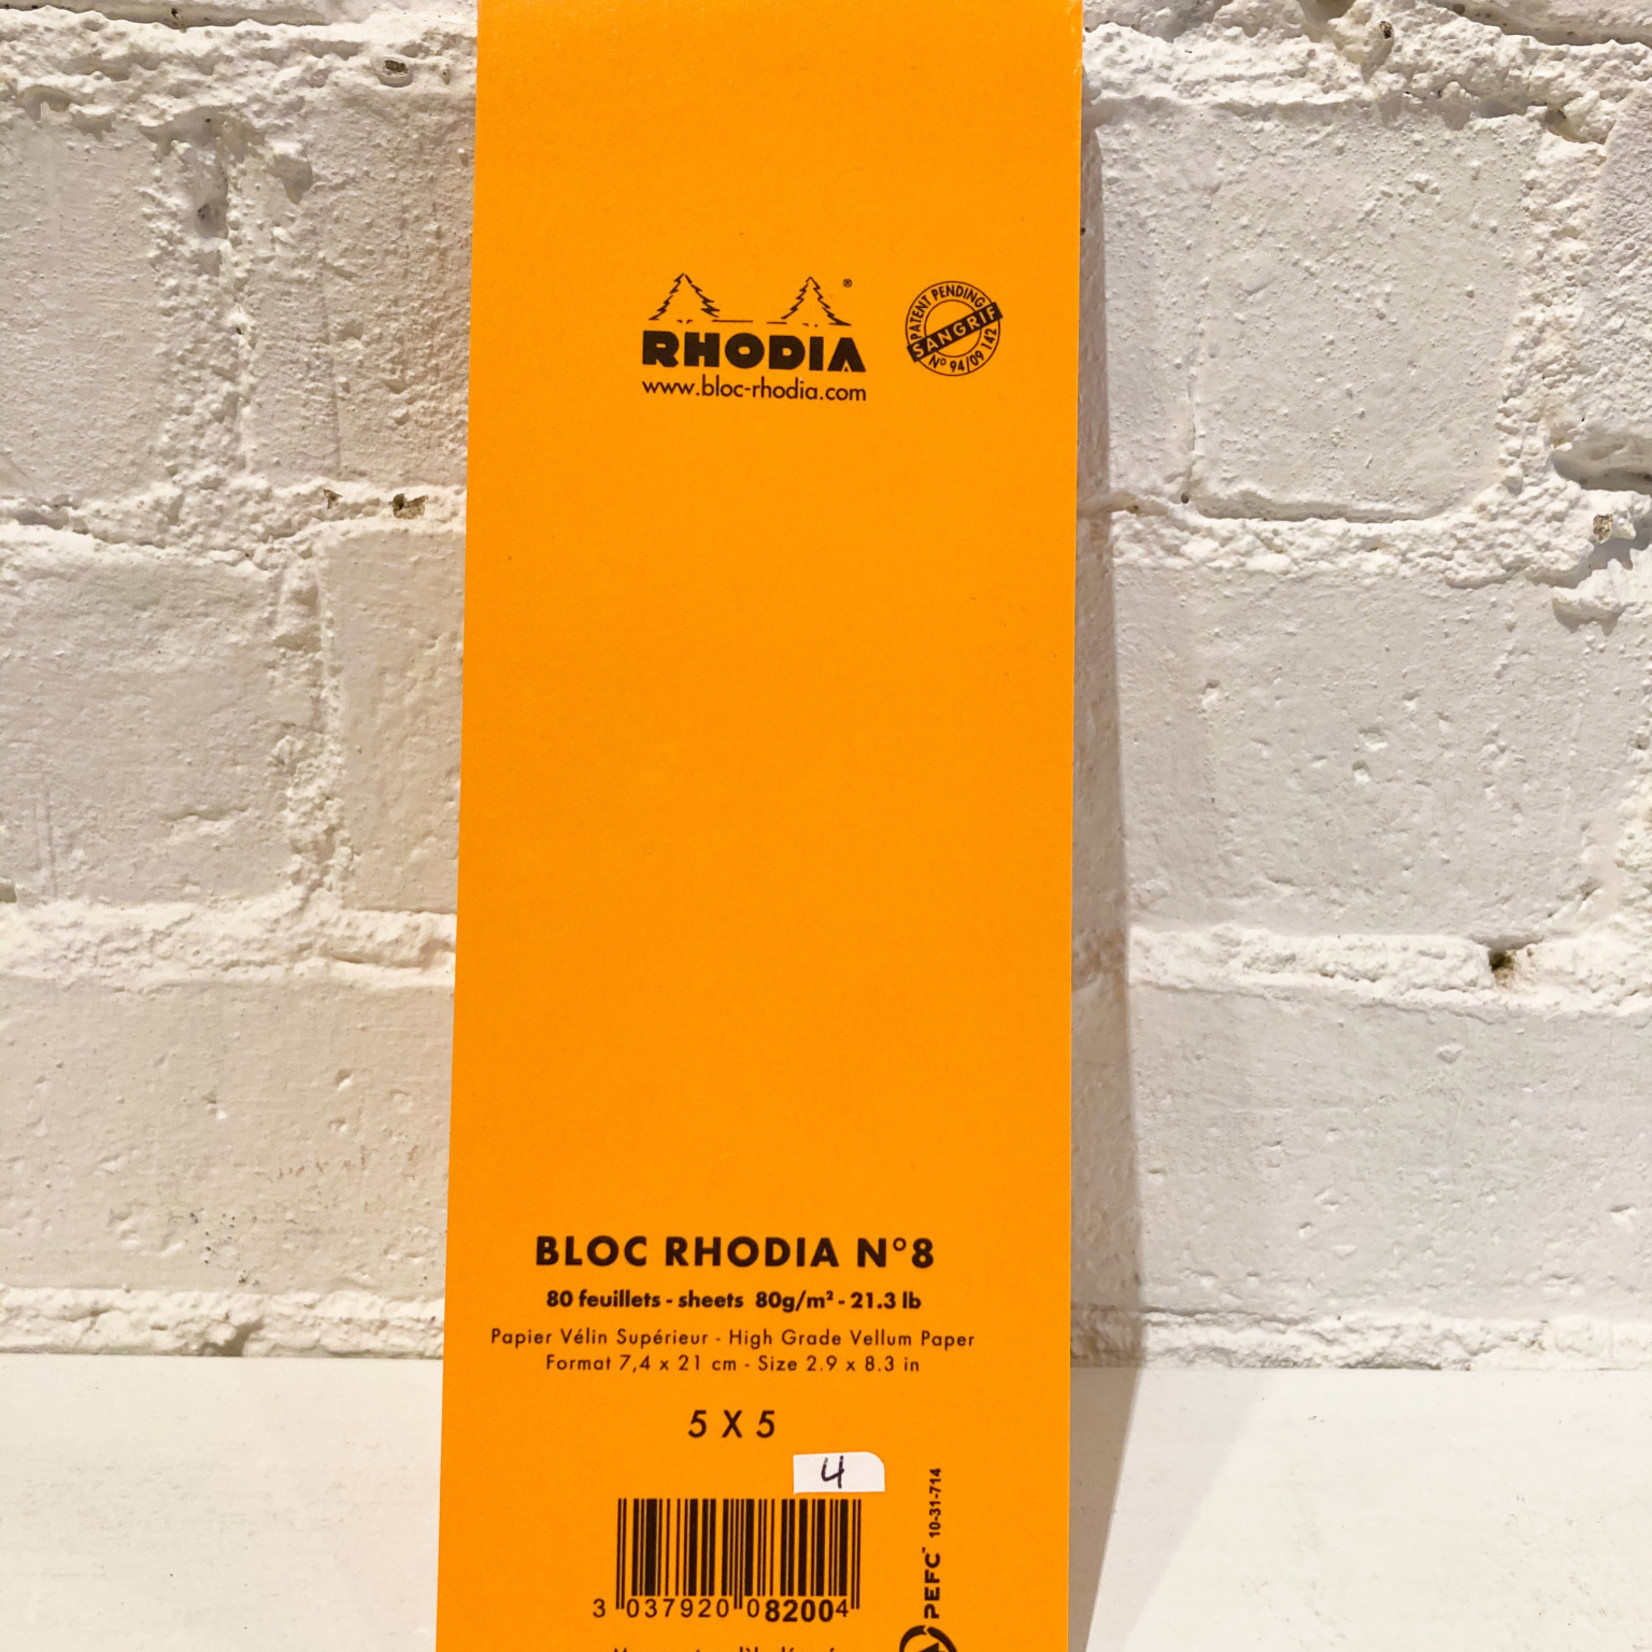 Rhodia Bloc Rhodia #8 Orange